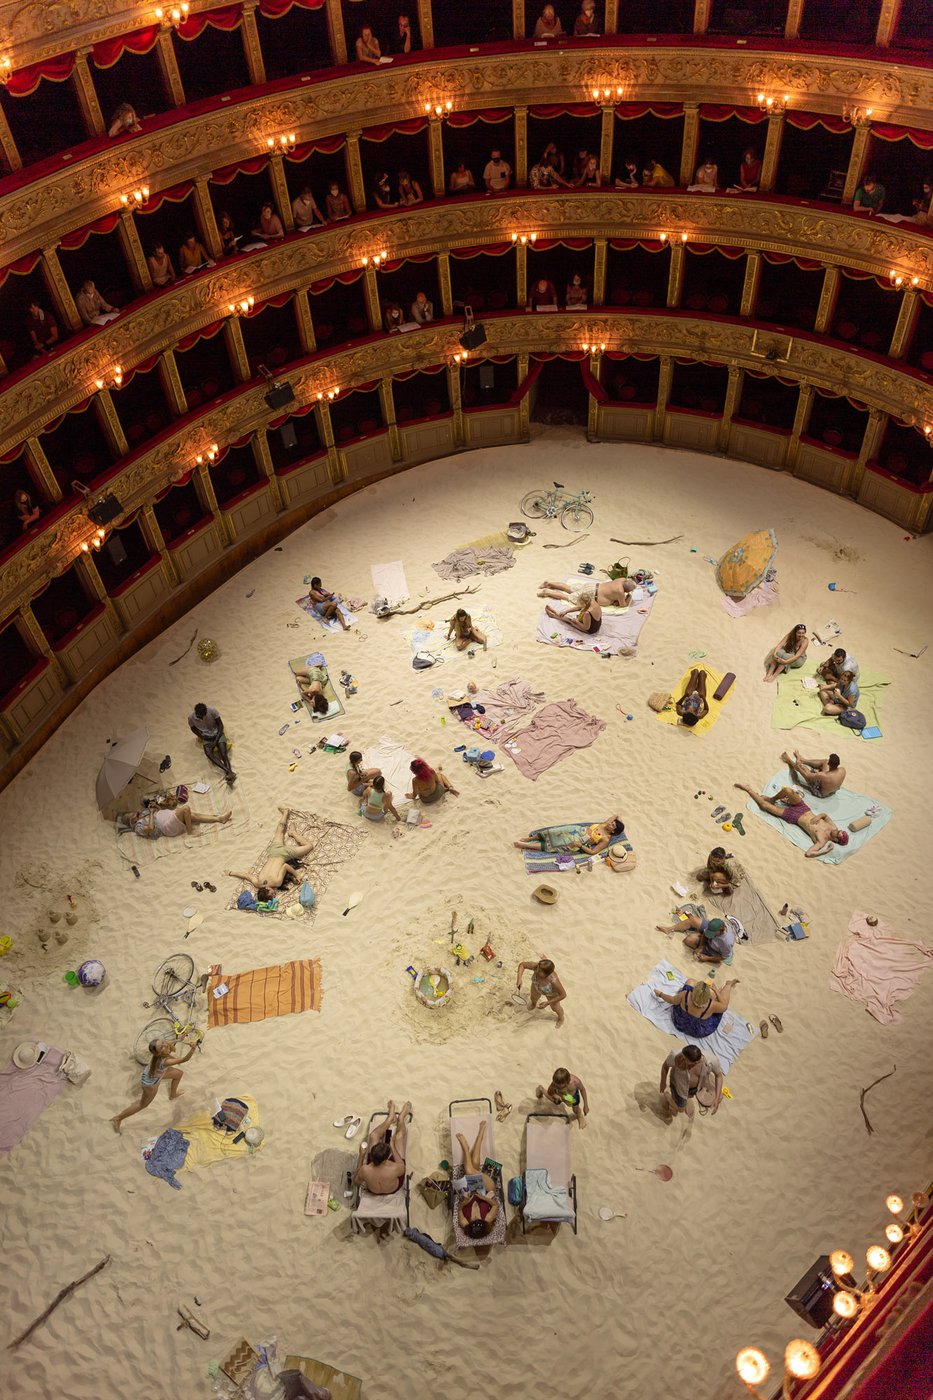 Interieur eines Theaters, Blick auf die Bühne wo Personen im Sand sitzen.